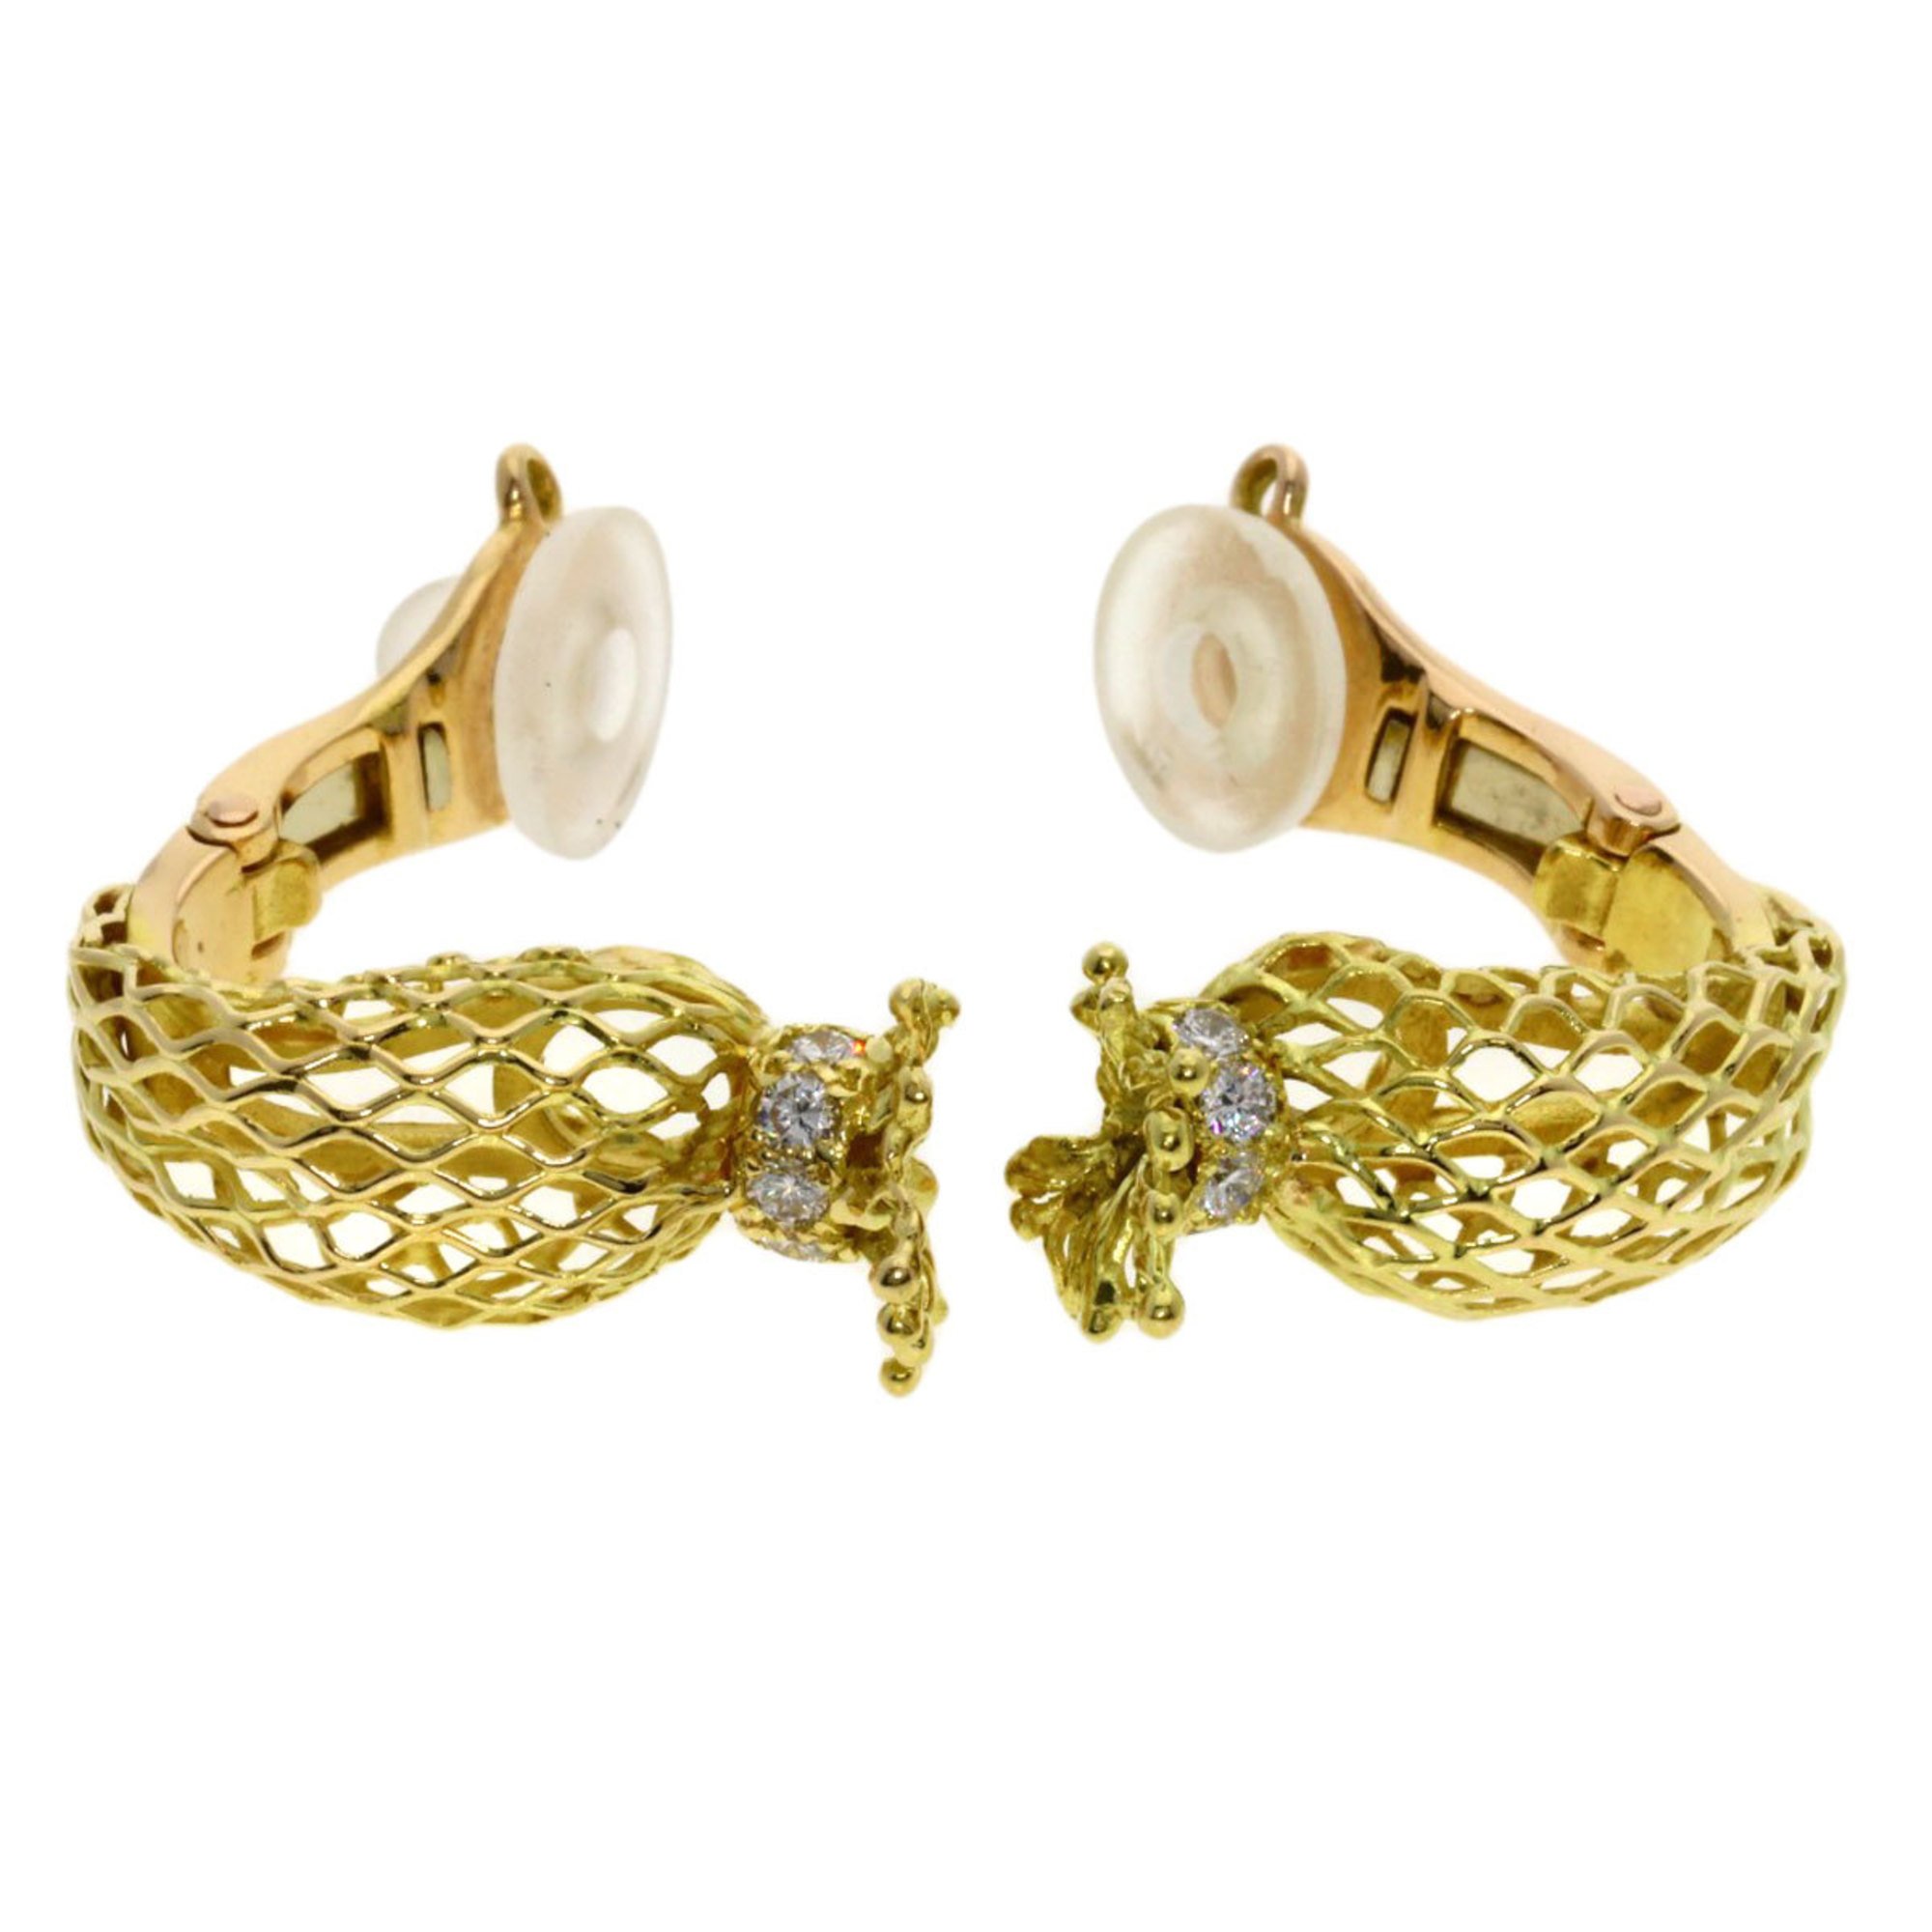 Piaget Diamond Earrings in 18k Yellow Gold for Women